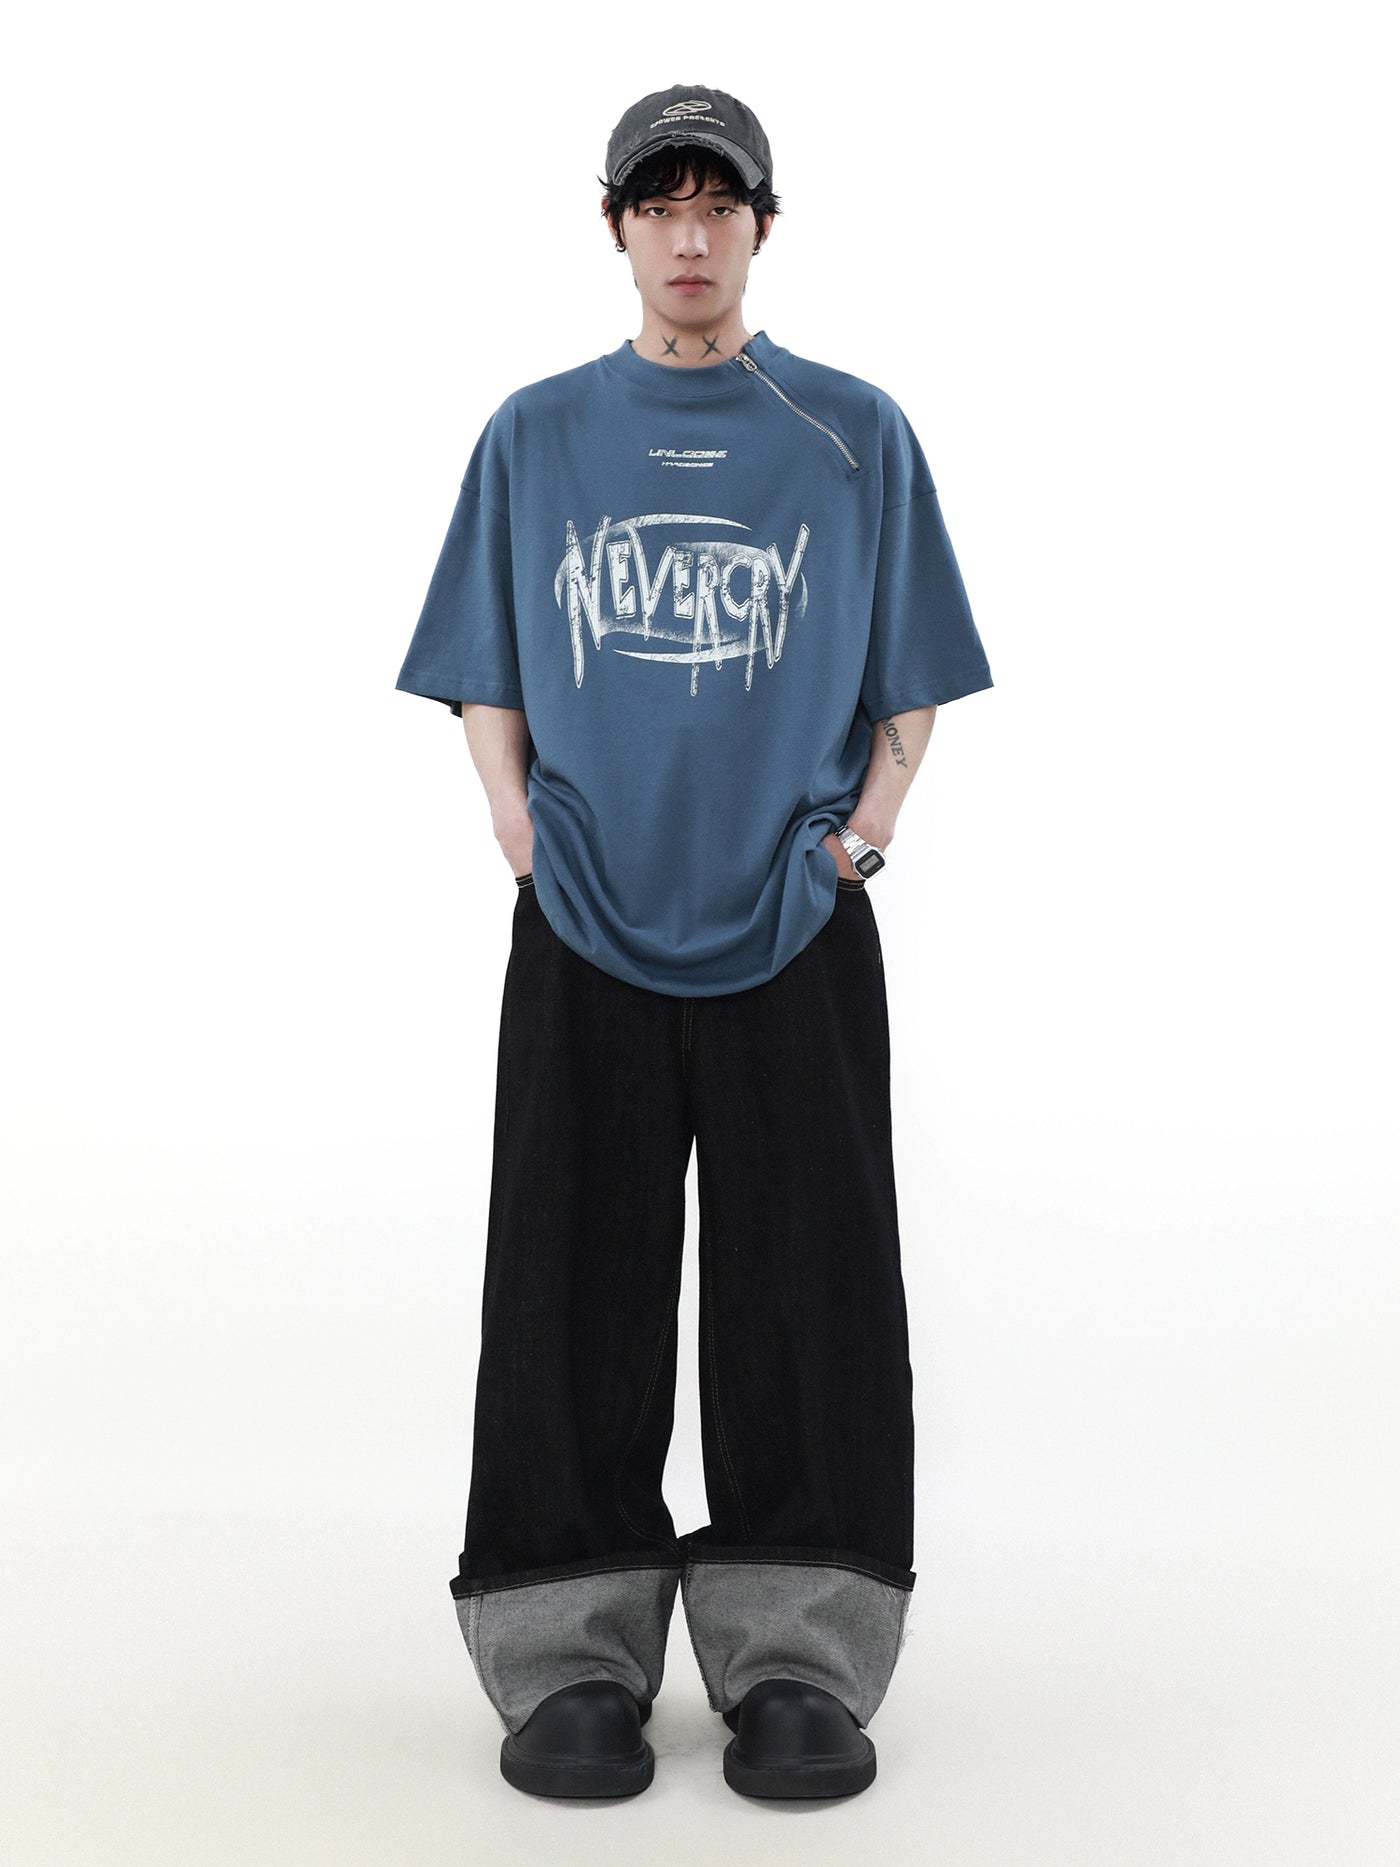 【MR nearly】diagonal zipper design short sleeve t-shirt  MR0083